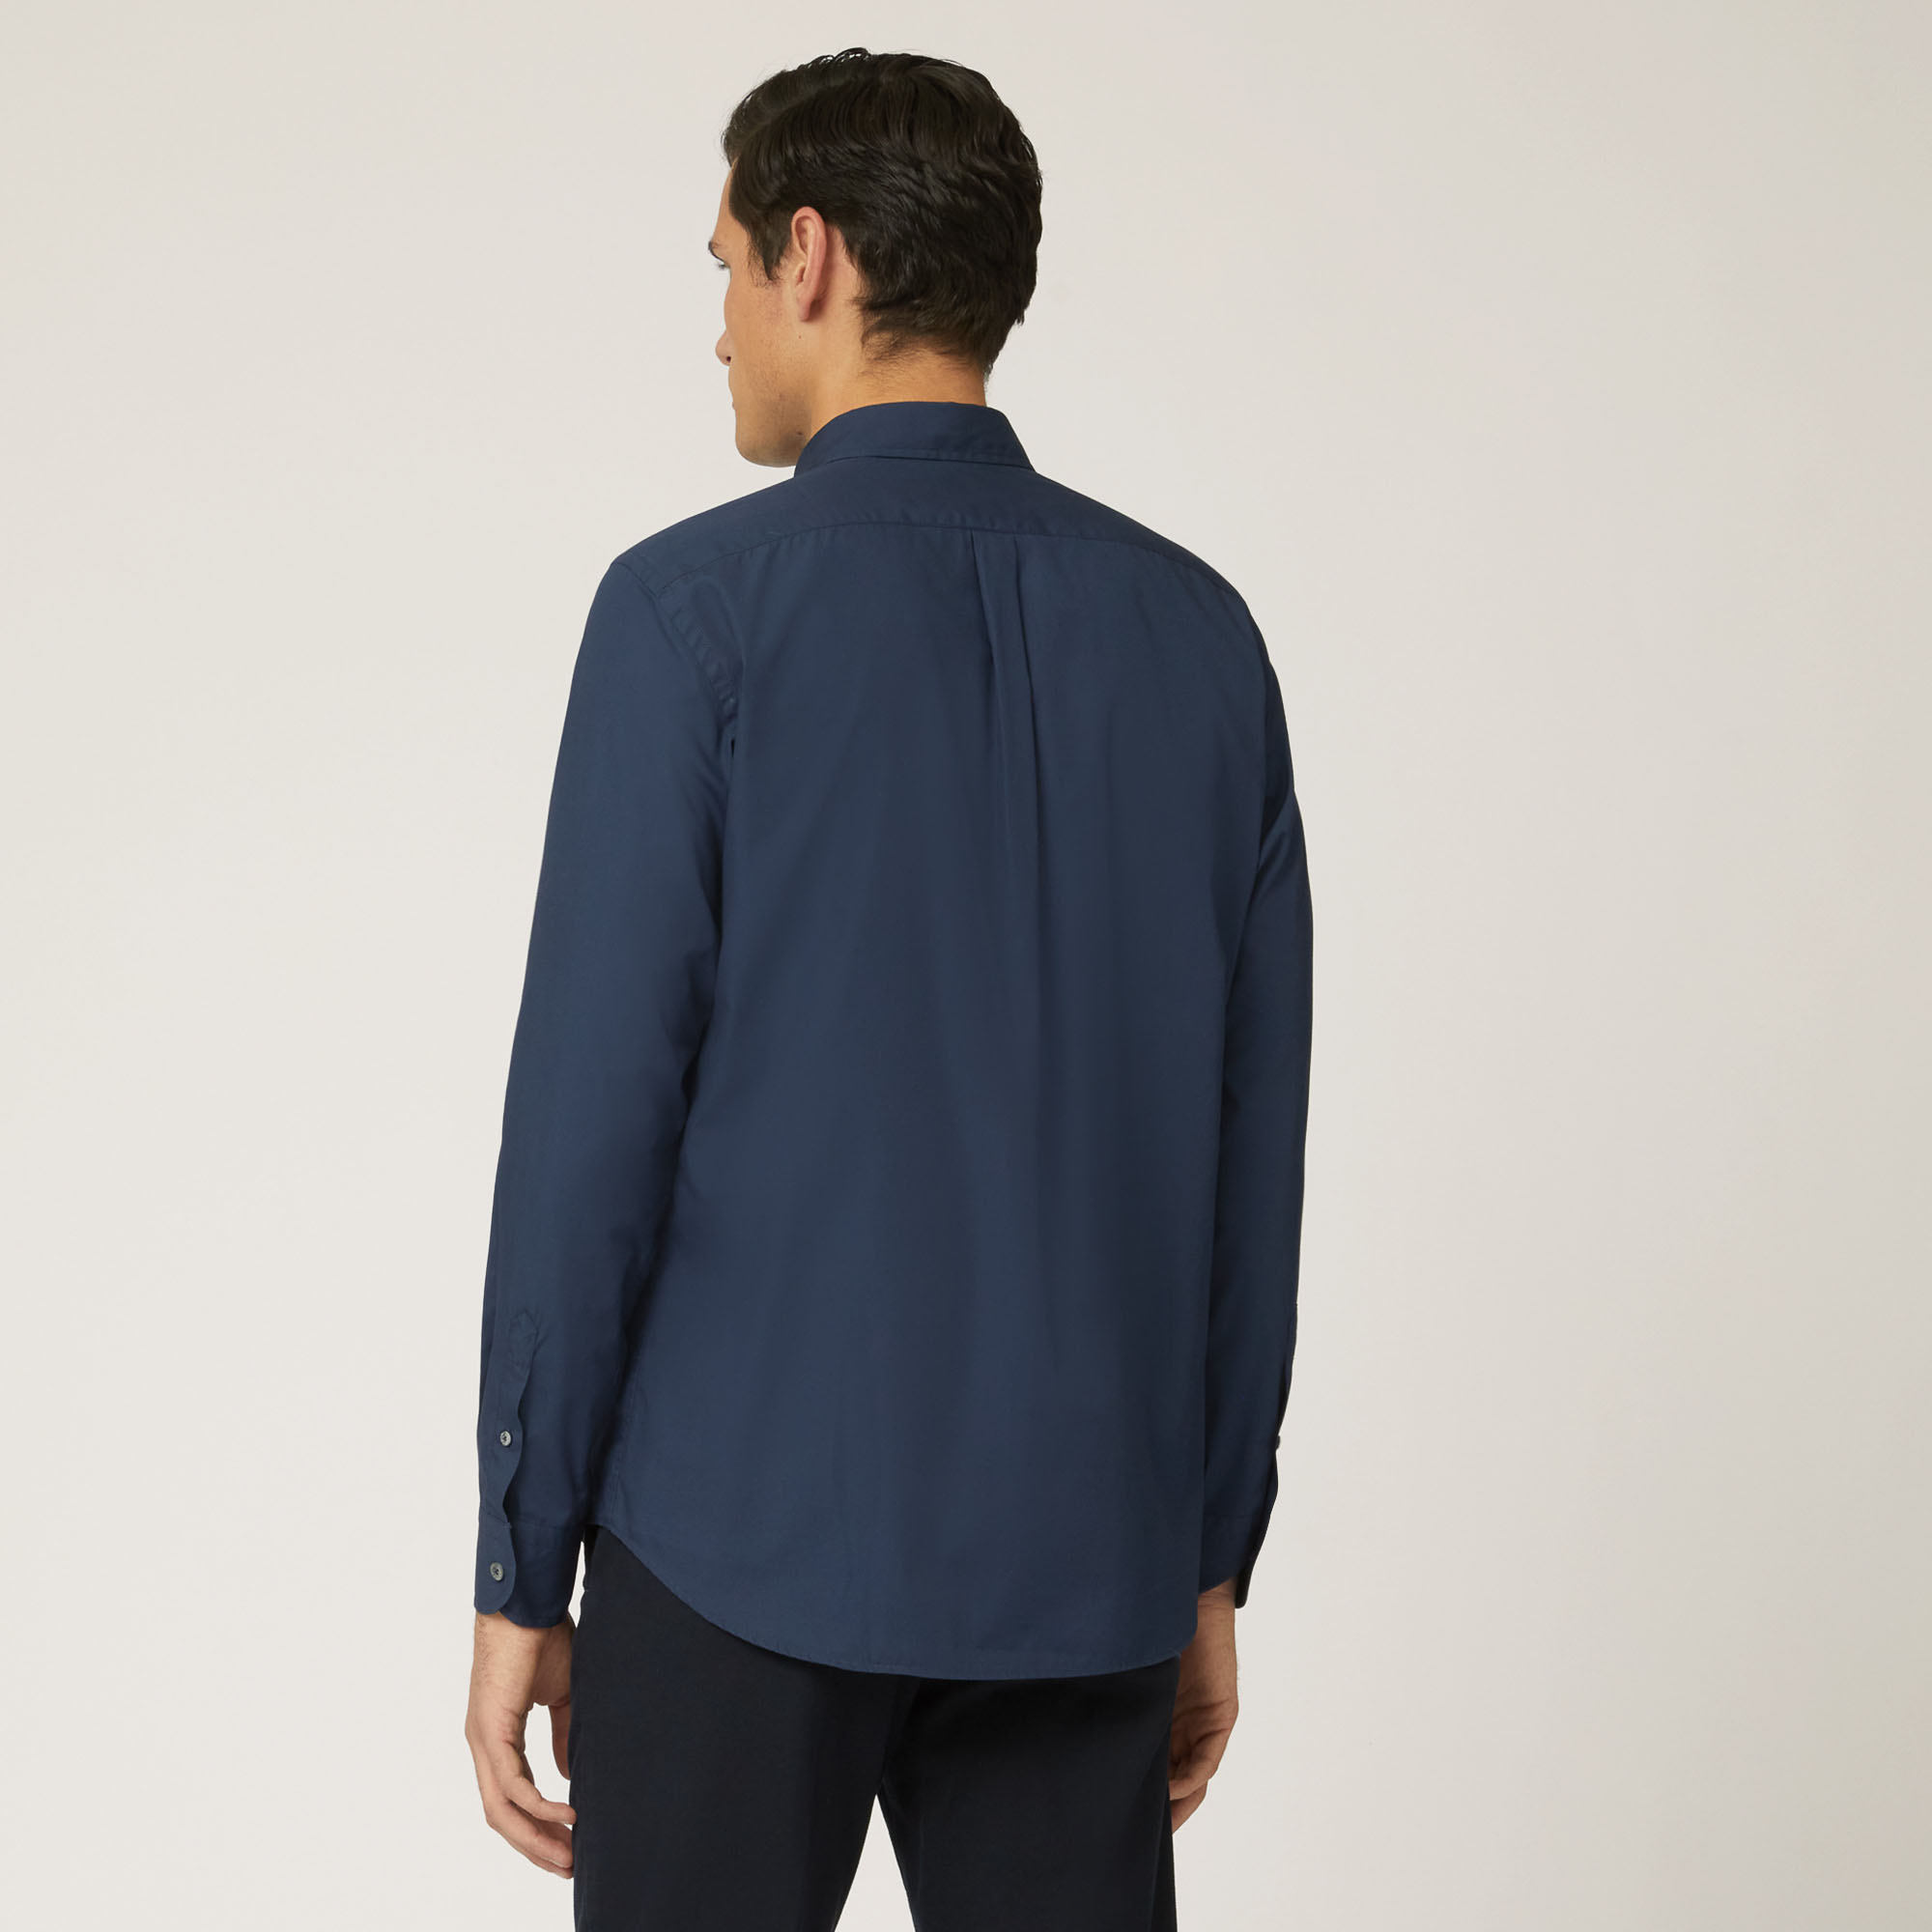 Camicia In Cotone Con Taschino A Contrasto, Light Blue, large